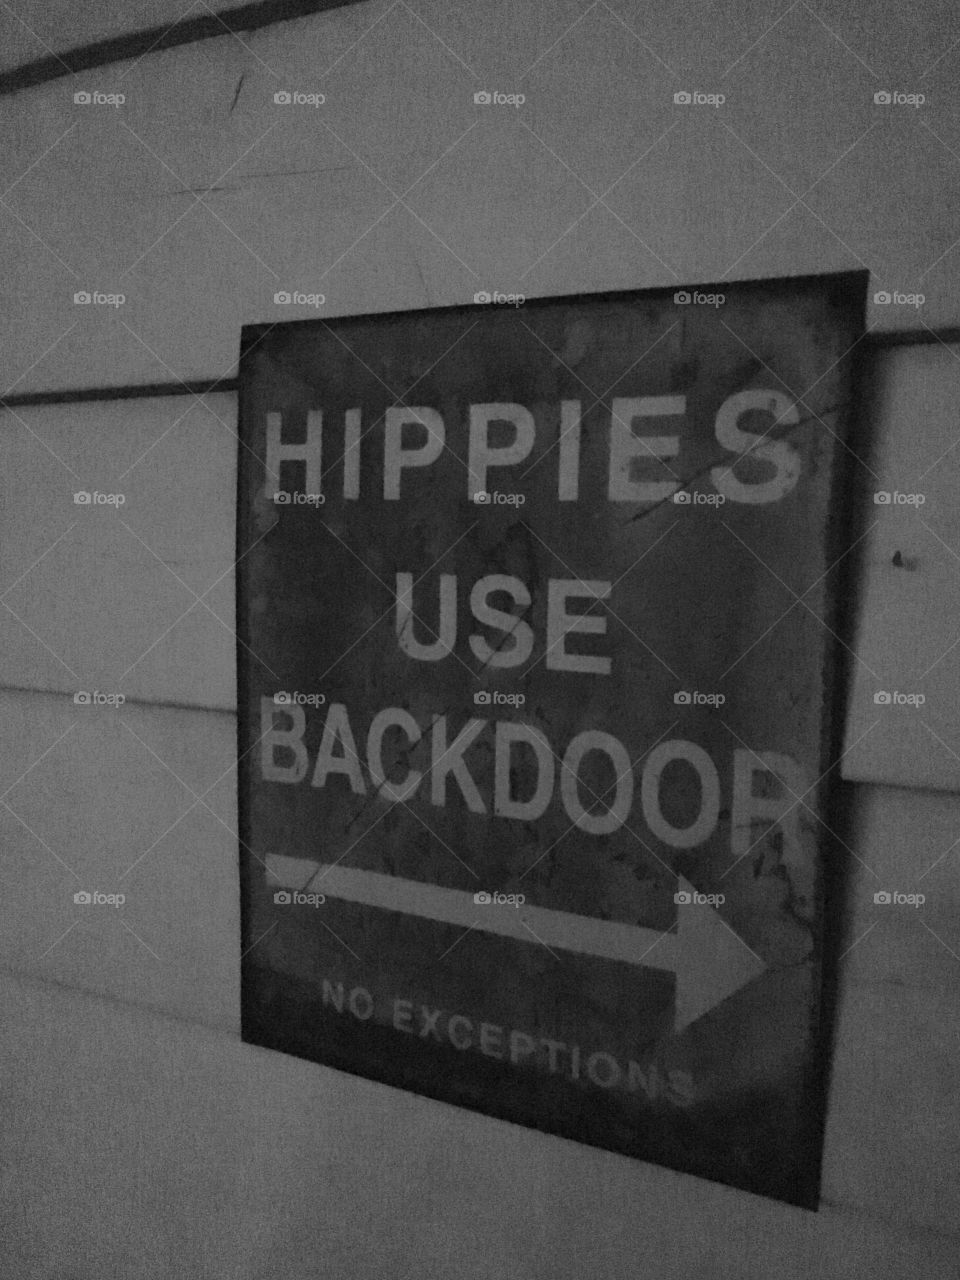 Hippies use back door if